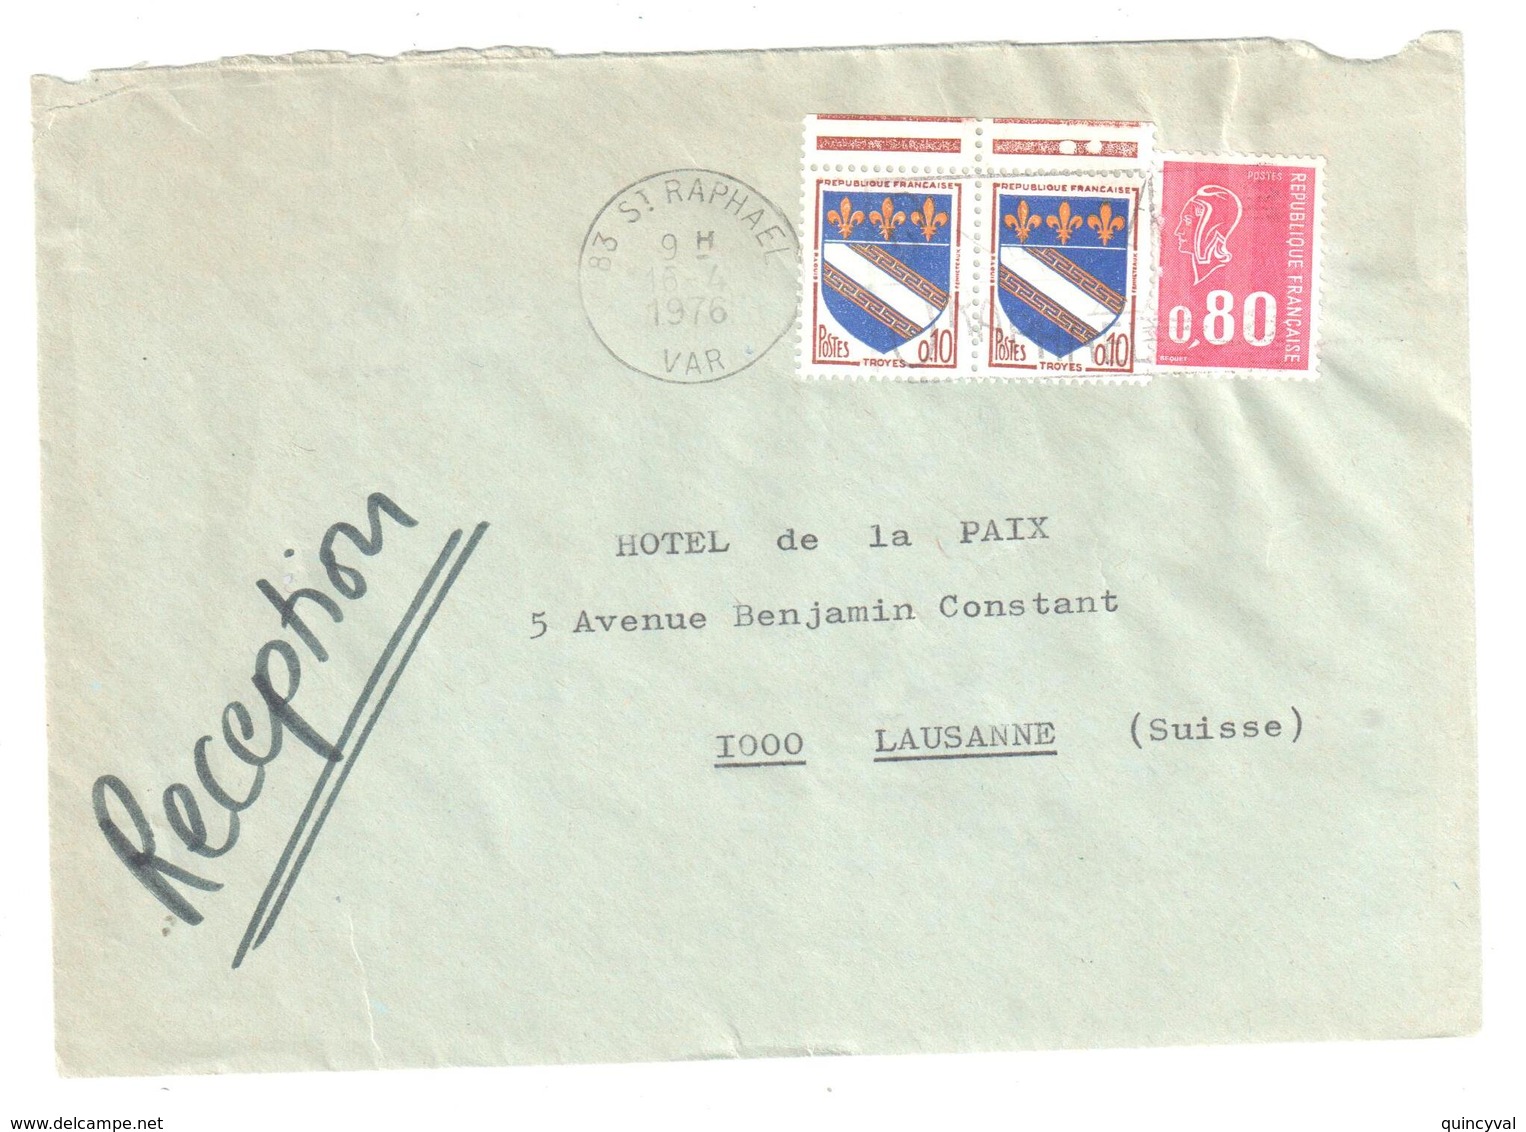 St RAPHAEL Var Lettre Destination Suisse Tarif Particulier Du 1 1 1976 80C Bequet 10c Troyes Yv 1353 1816 Dest Lausanne - Lettres & Documents